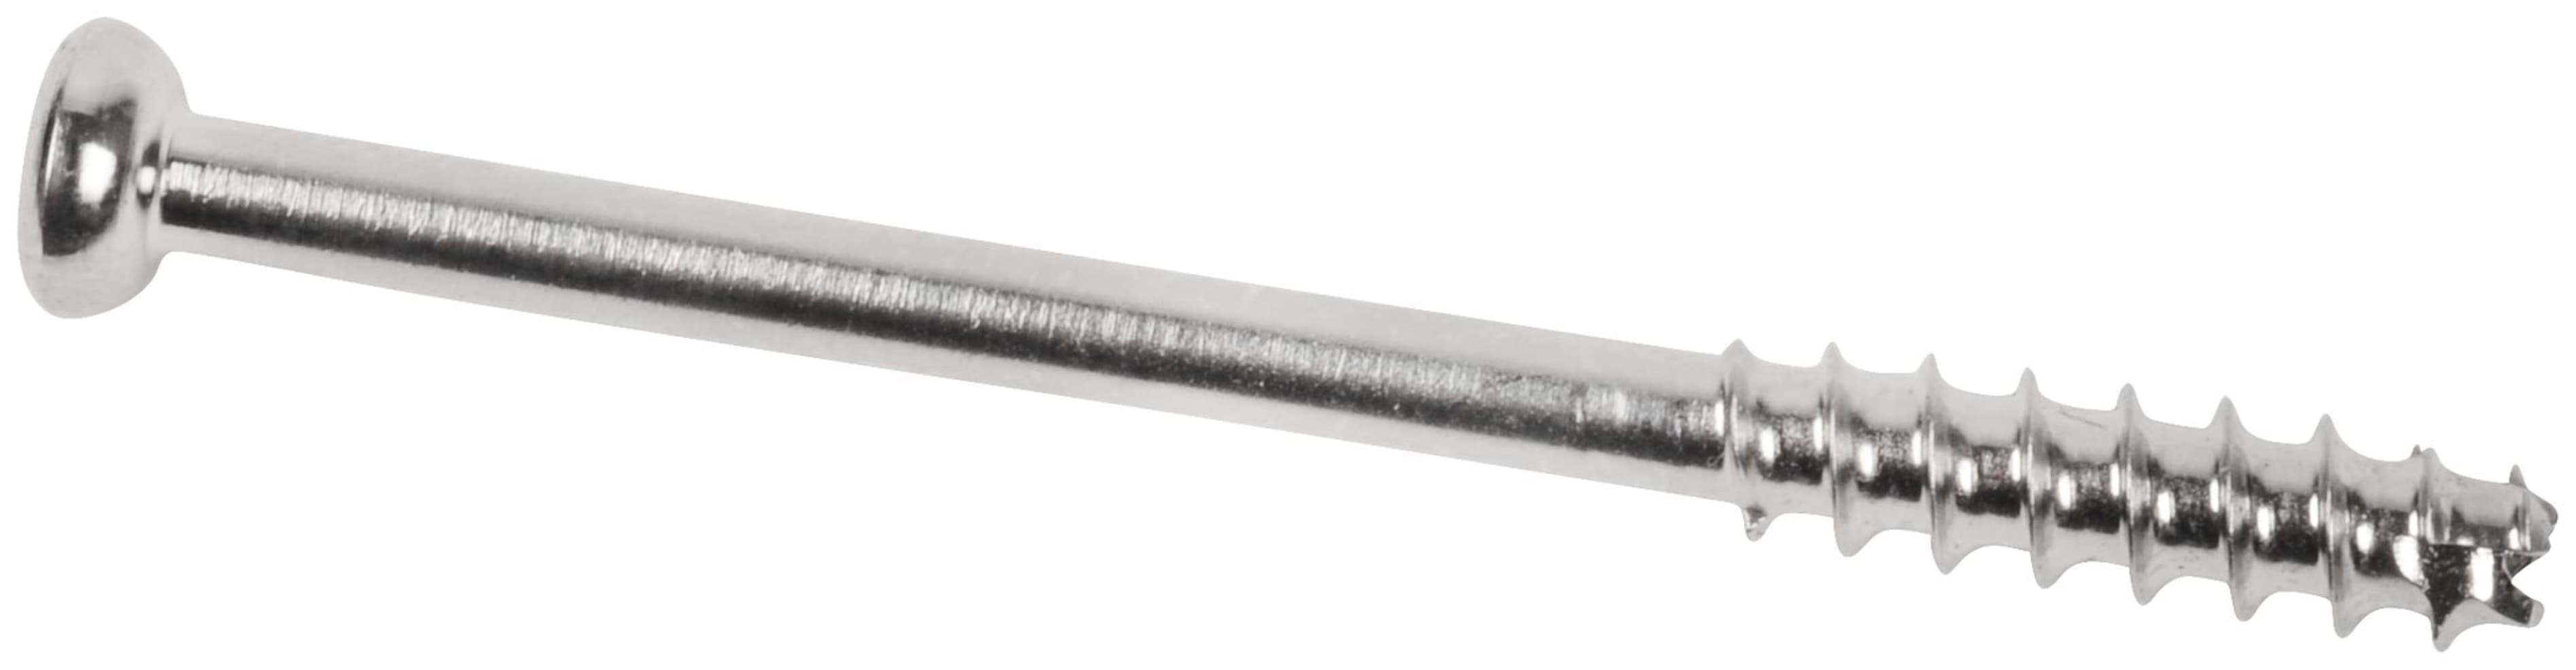 Low Profil Schraube, Stahl, kanüliert, kurzes Gewinde, 4.0 x 45 mm, unsteril, IM